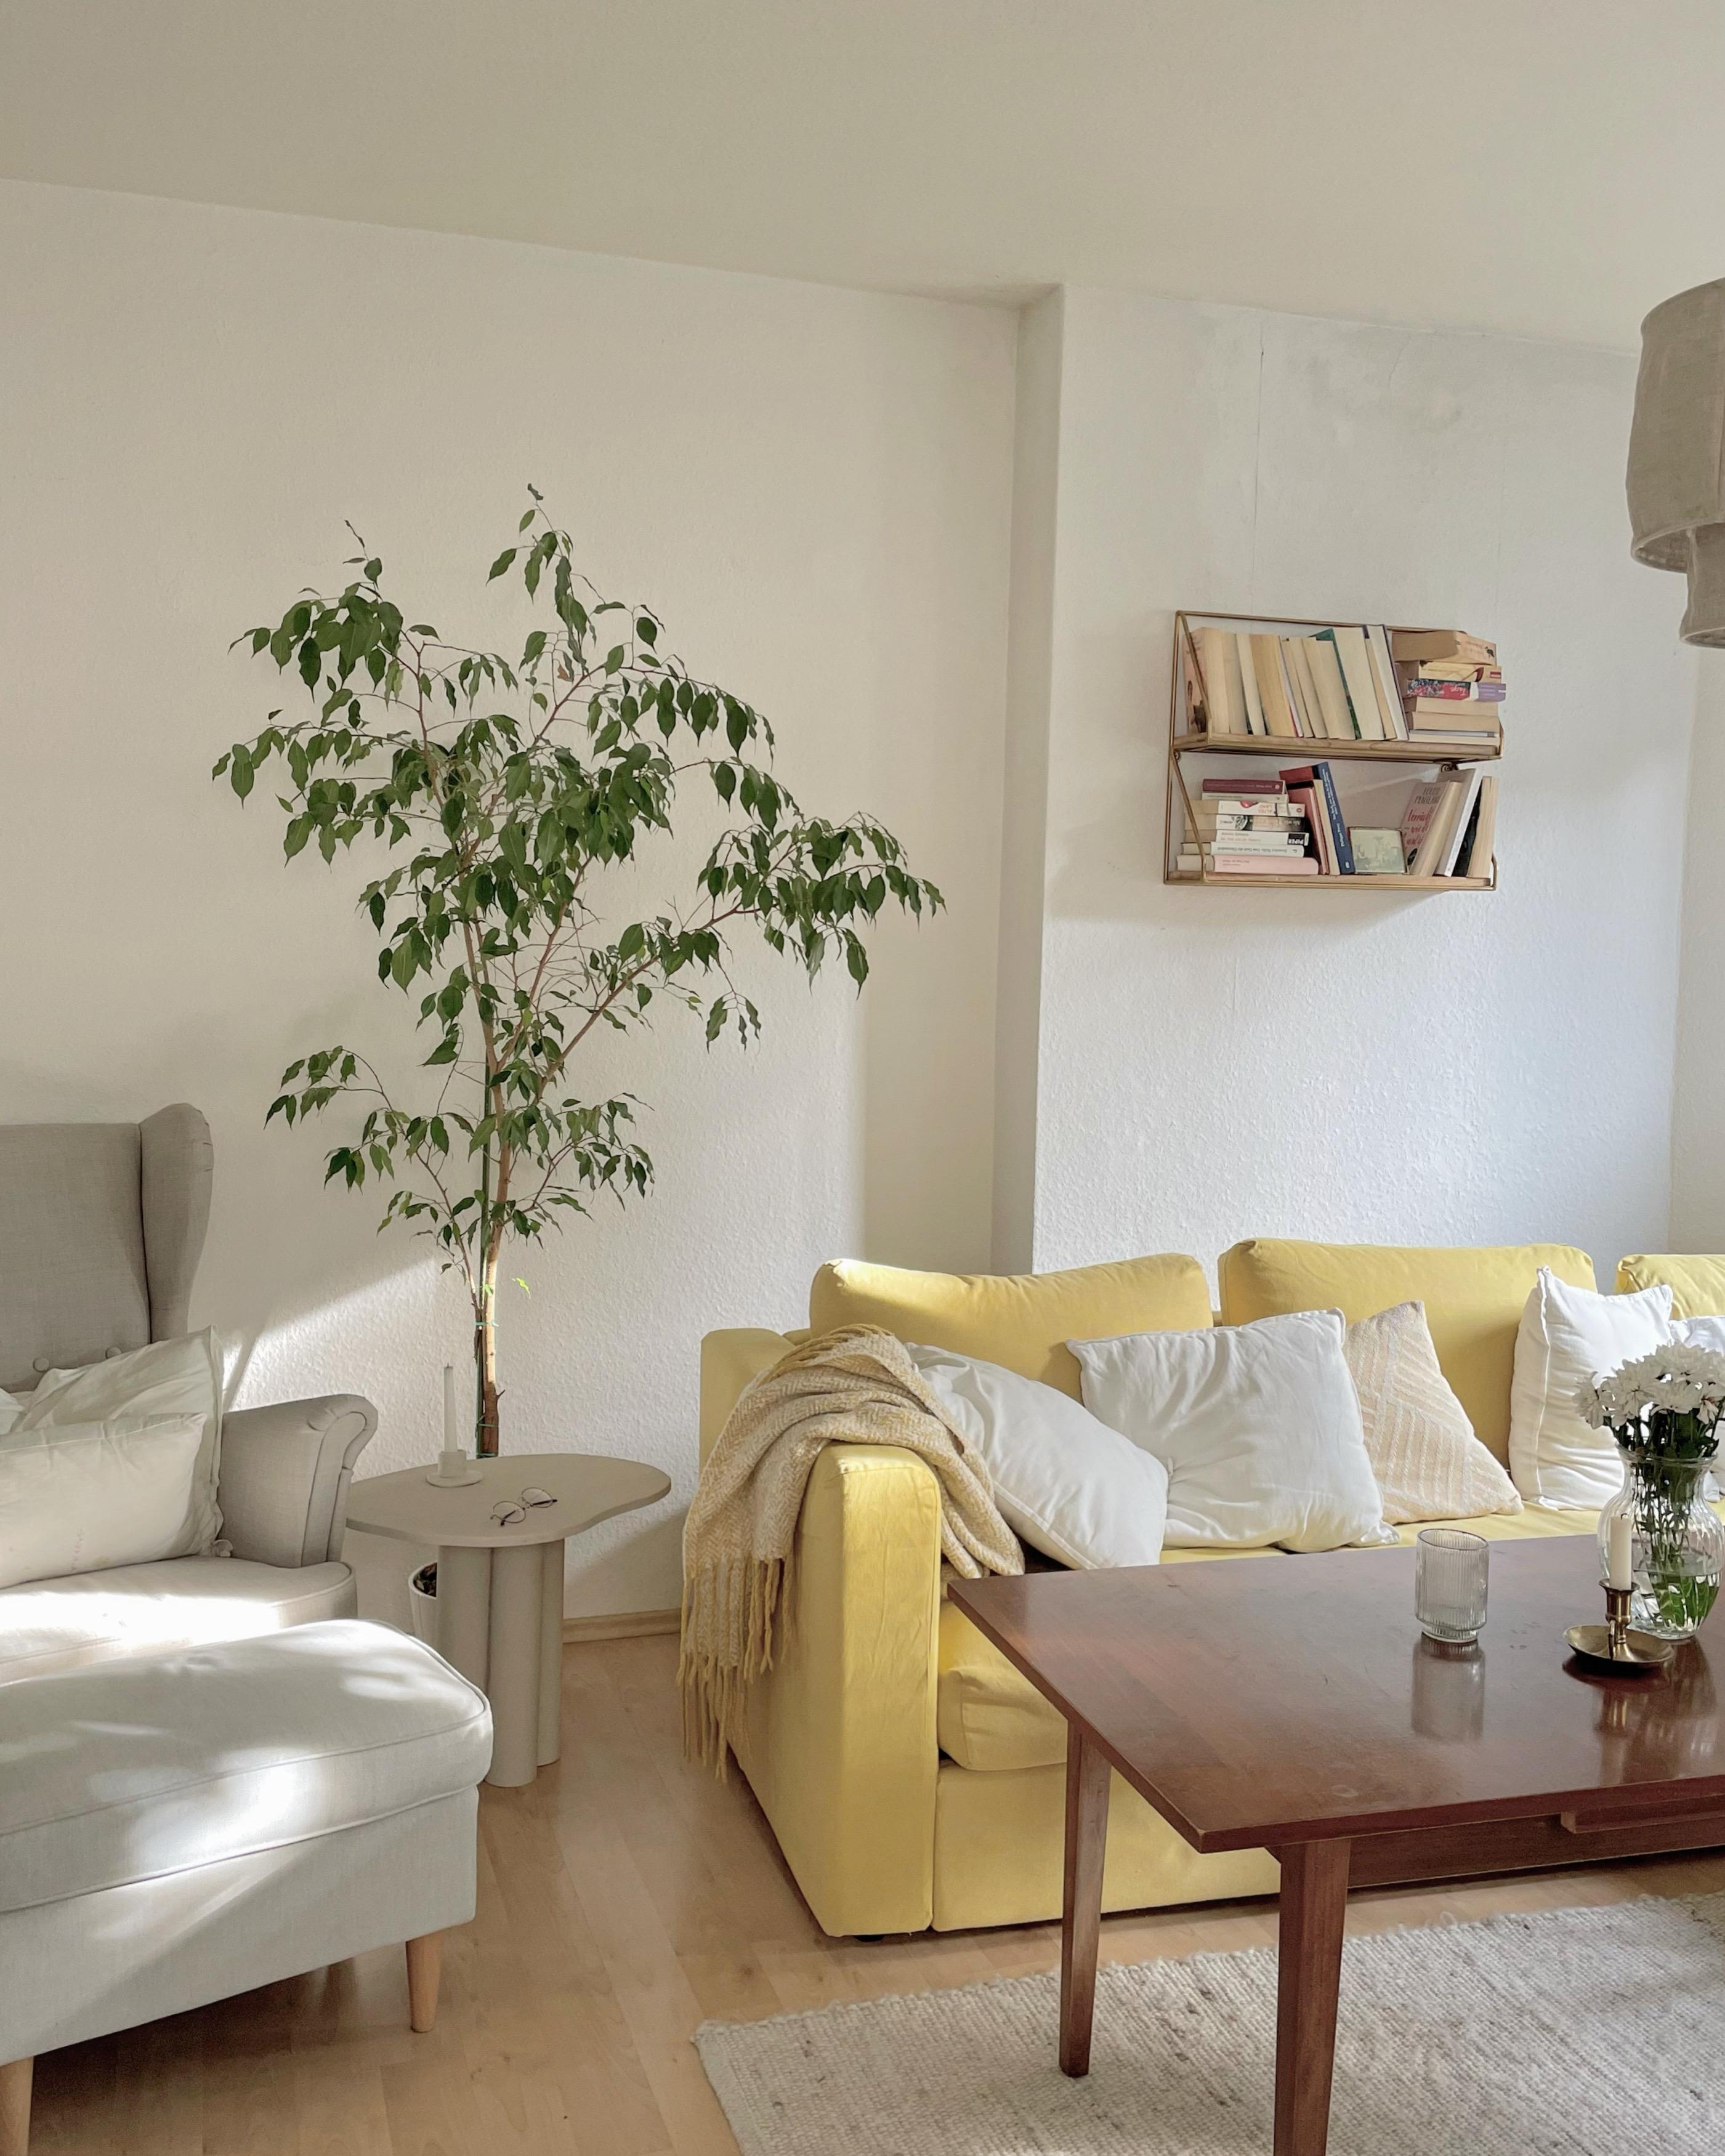 Wohnzimmerliebe!
Bei dem Licht gefällt mir das Sofa noch umso besser - was sagt ihr? #Wohnzimmerliebe #couchstyle